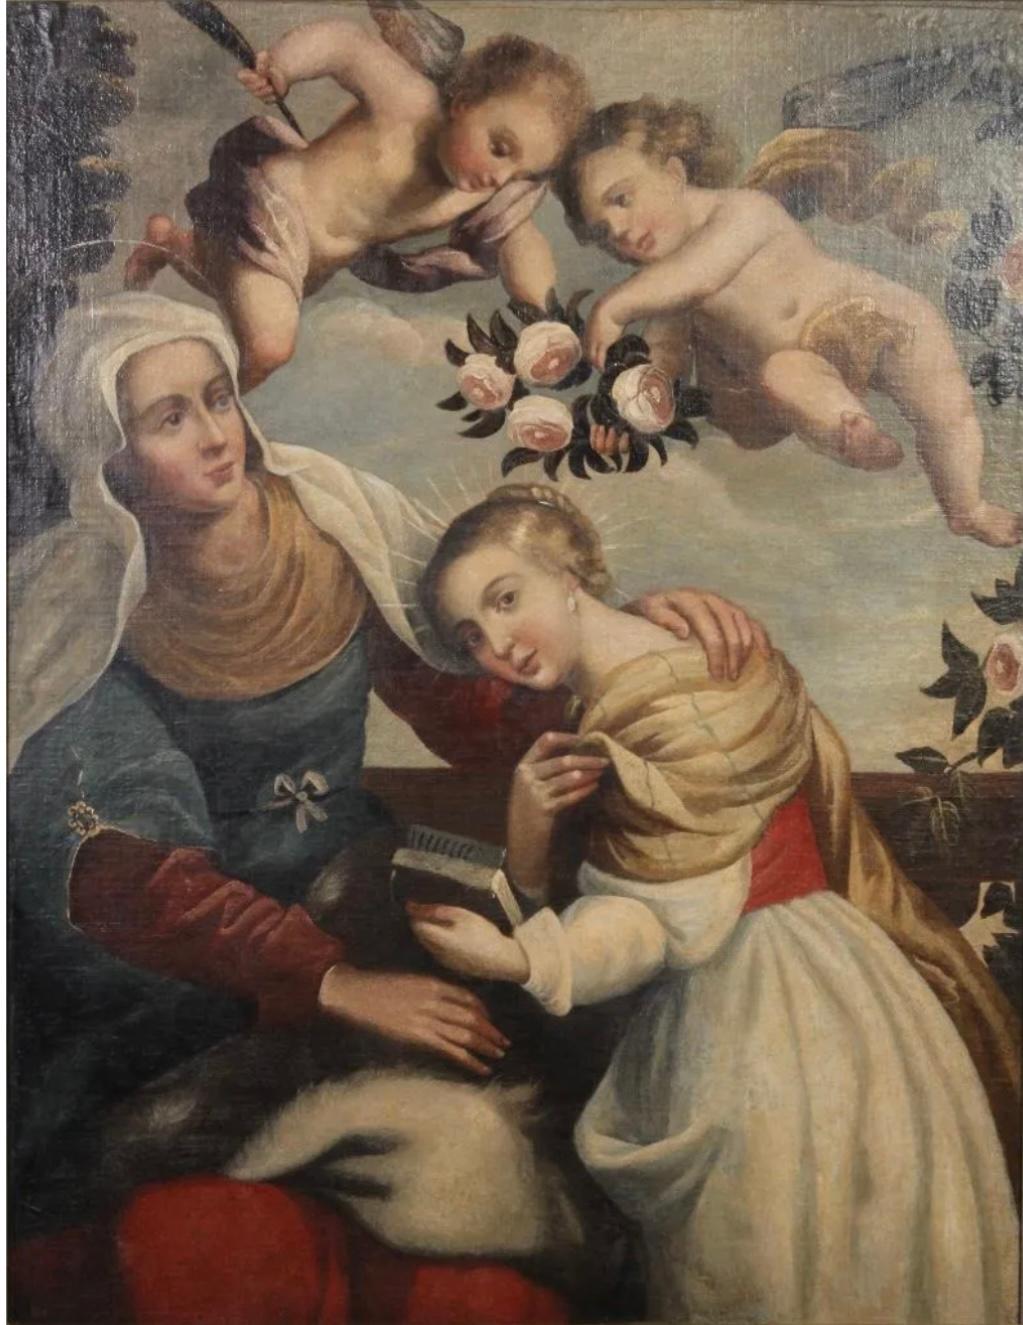 Une huile sur toile traditionnelle et caractéristique du XVIIIe siècle, coloniale espagnole.
représentant la Vierge Marie tenant un livre avec sainte Anne et des angelots tenant des roses dans la composition caractéristique illustrant l'éducation de